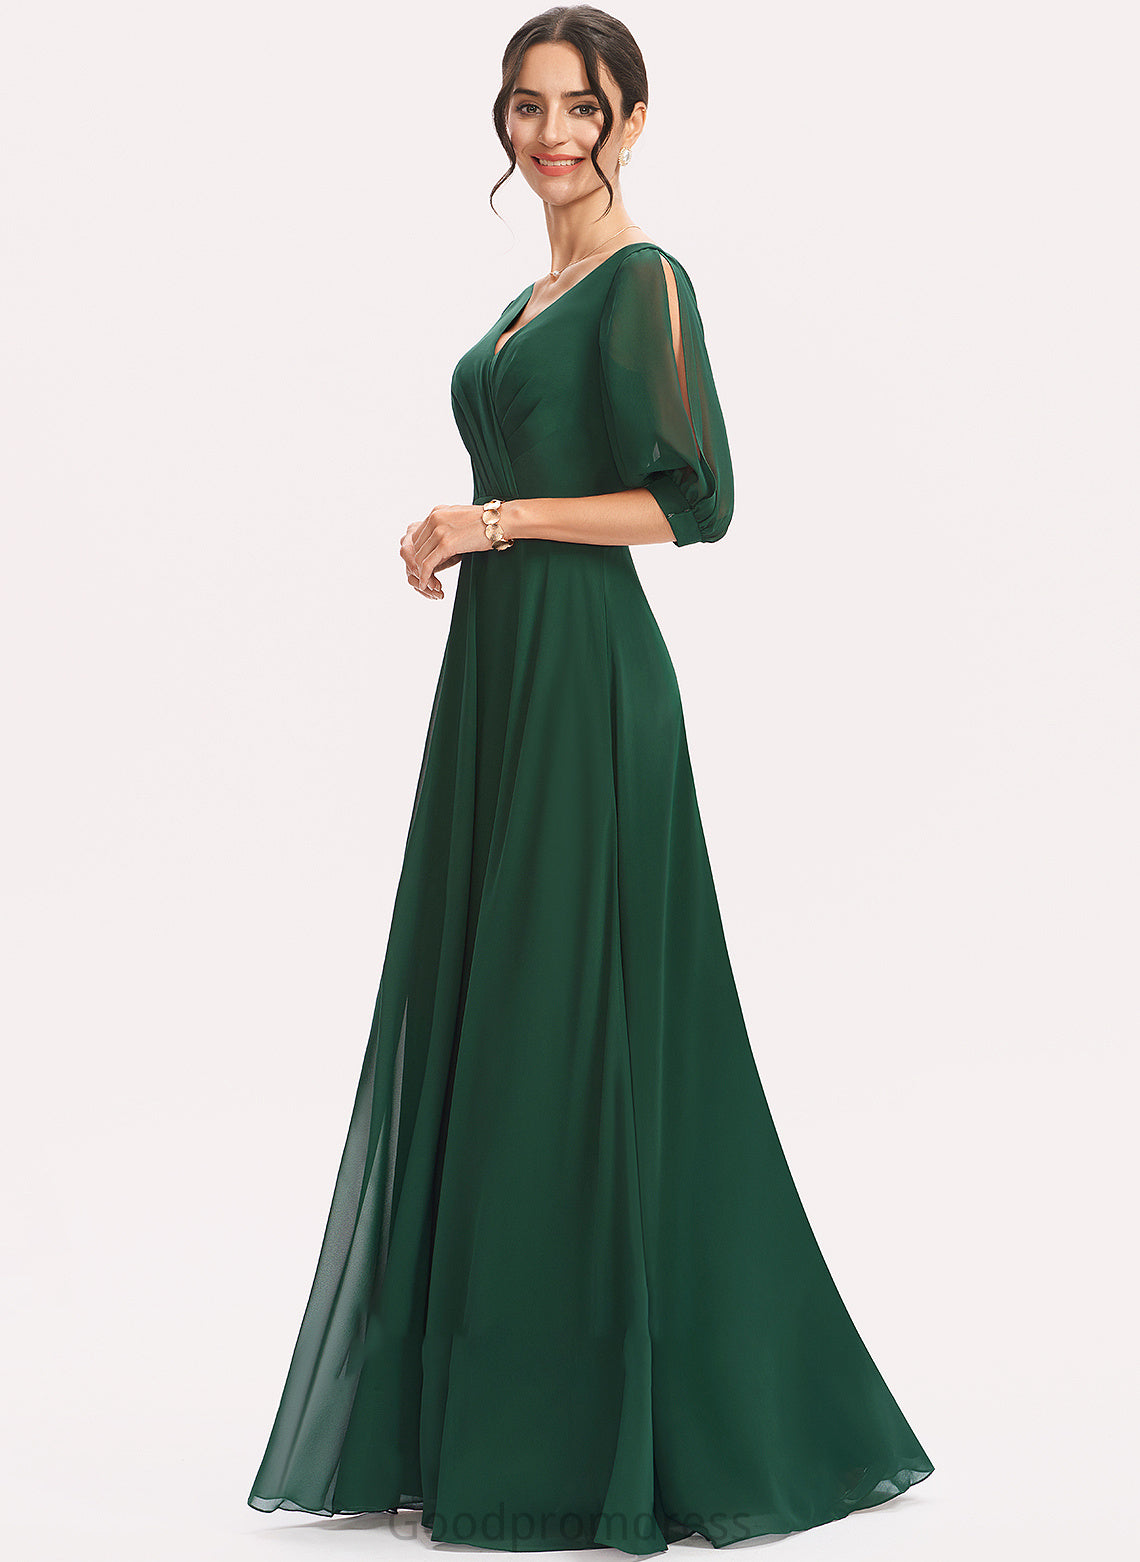 Embellishment Floor-Length Length Silhouette Ruffle Neckline Fabric A-Line V-neck Macie A-Line/Princess Natural Waist Bridesmaid Dresses